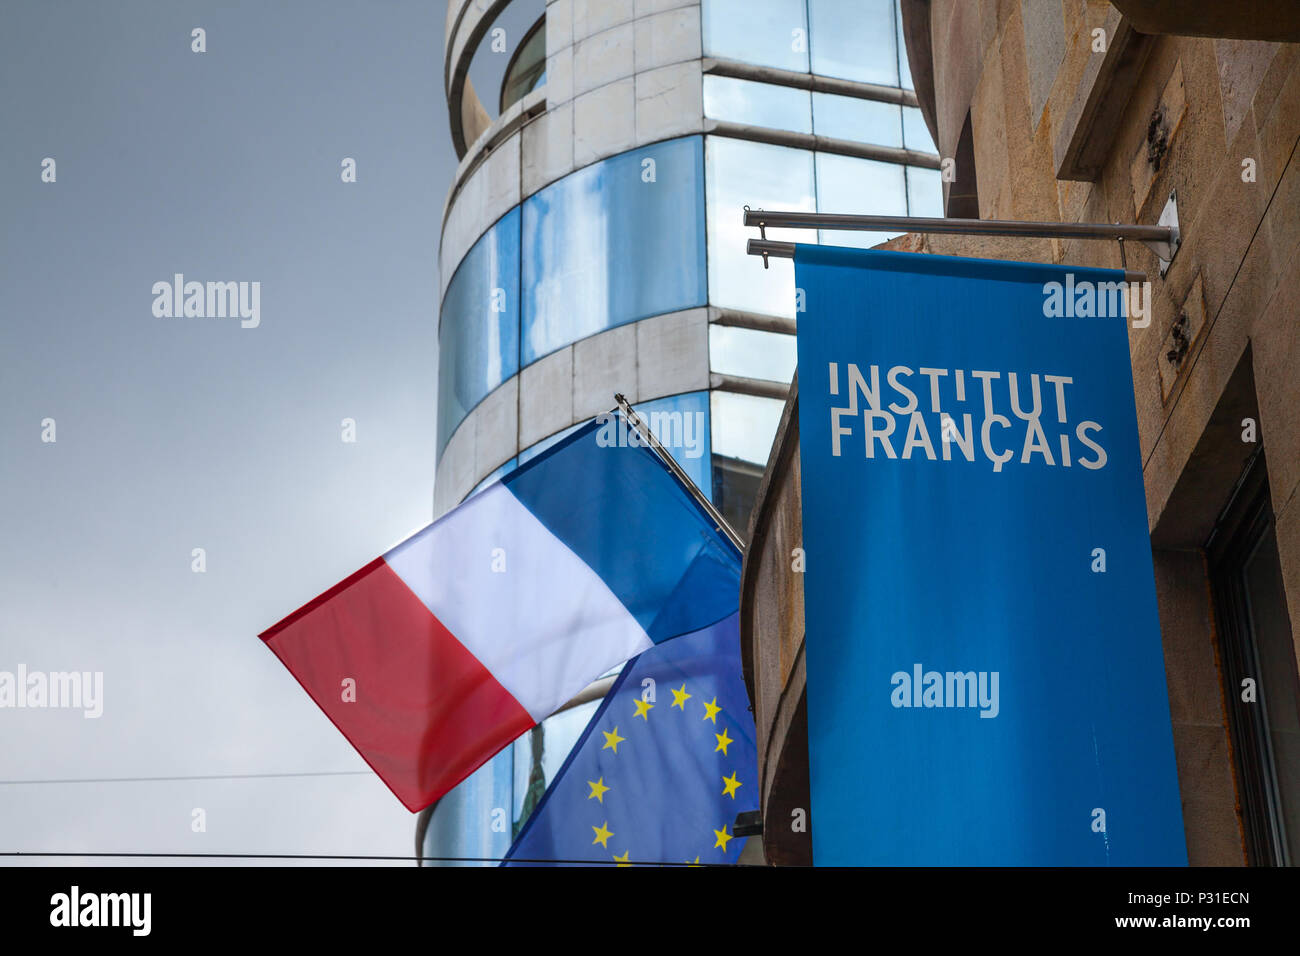 BELGRADE, SERBIE - 14 juin 2018 : Le logo de l'Institut français (Institut Francais) avec le drapeau français sur leur siège pour la Serbie. Institut Francais est i Banque D'Images